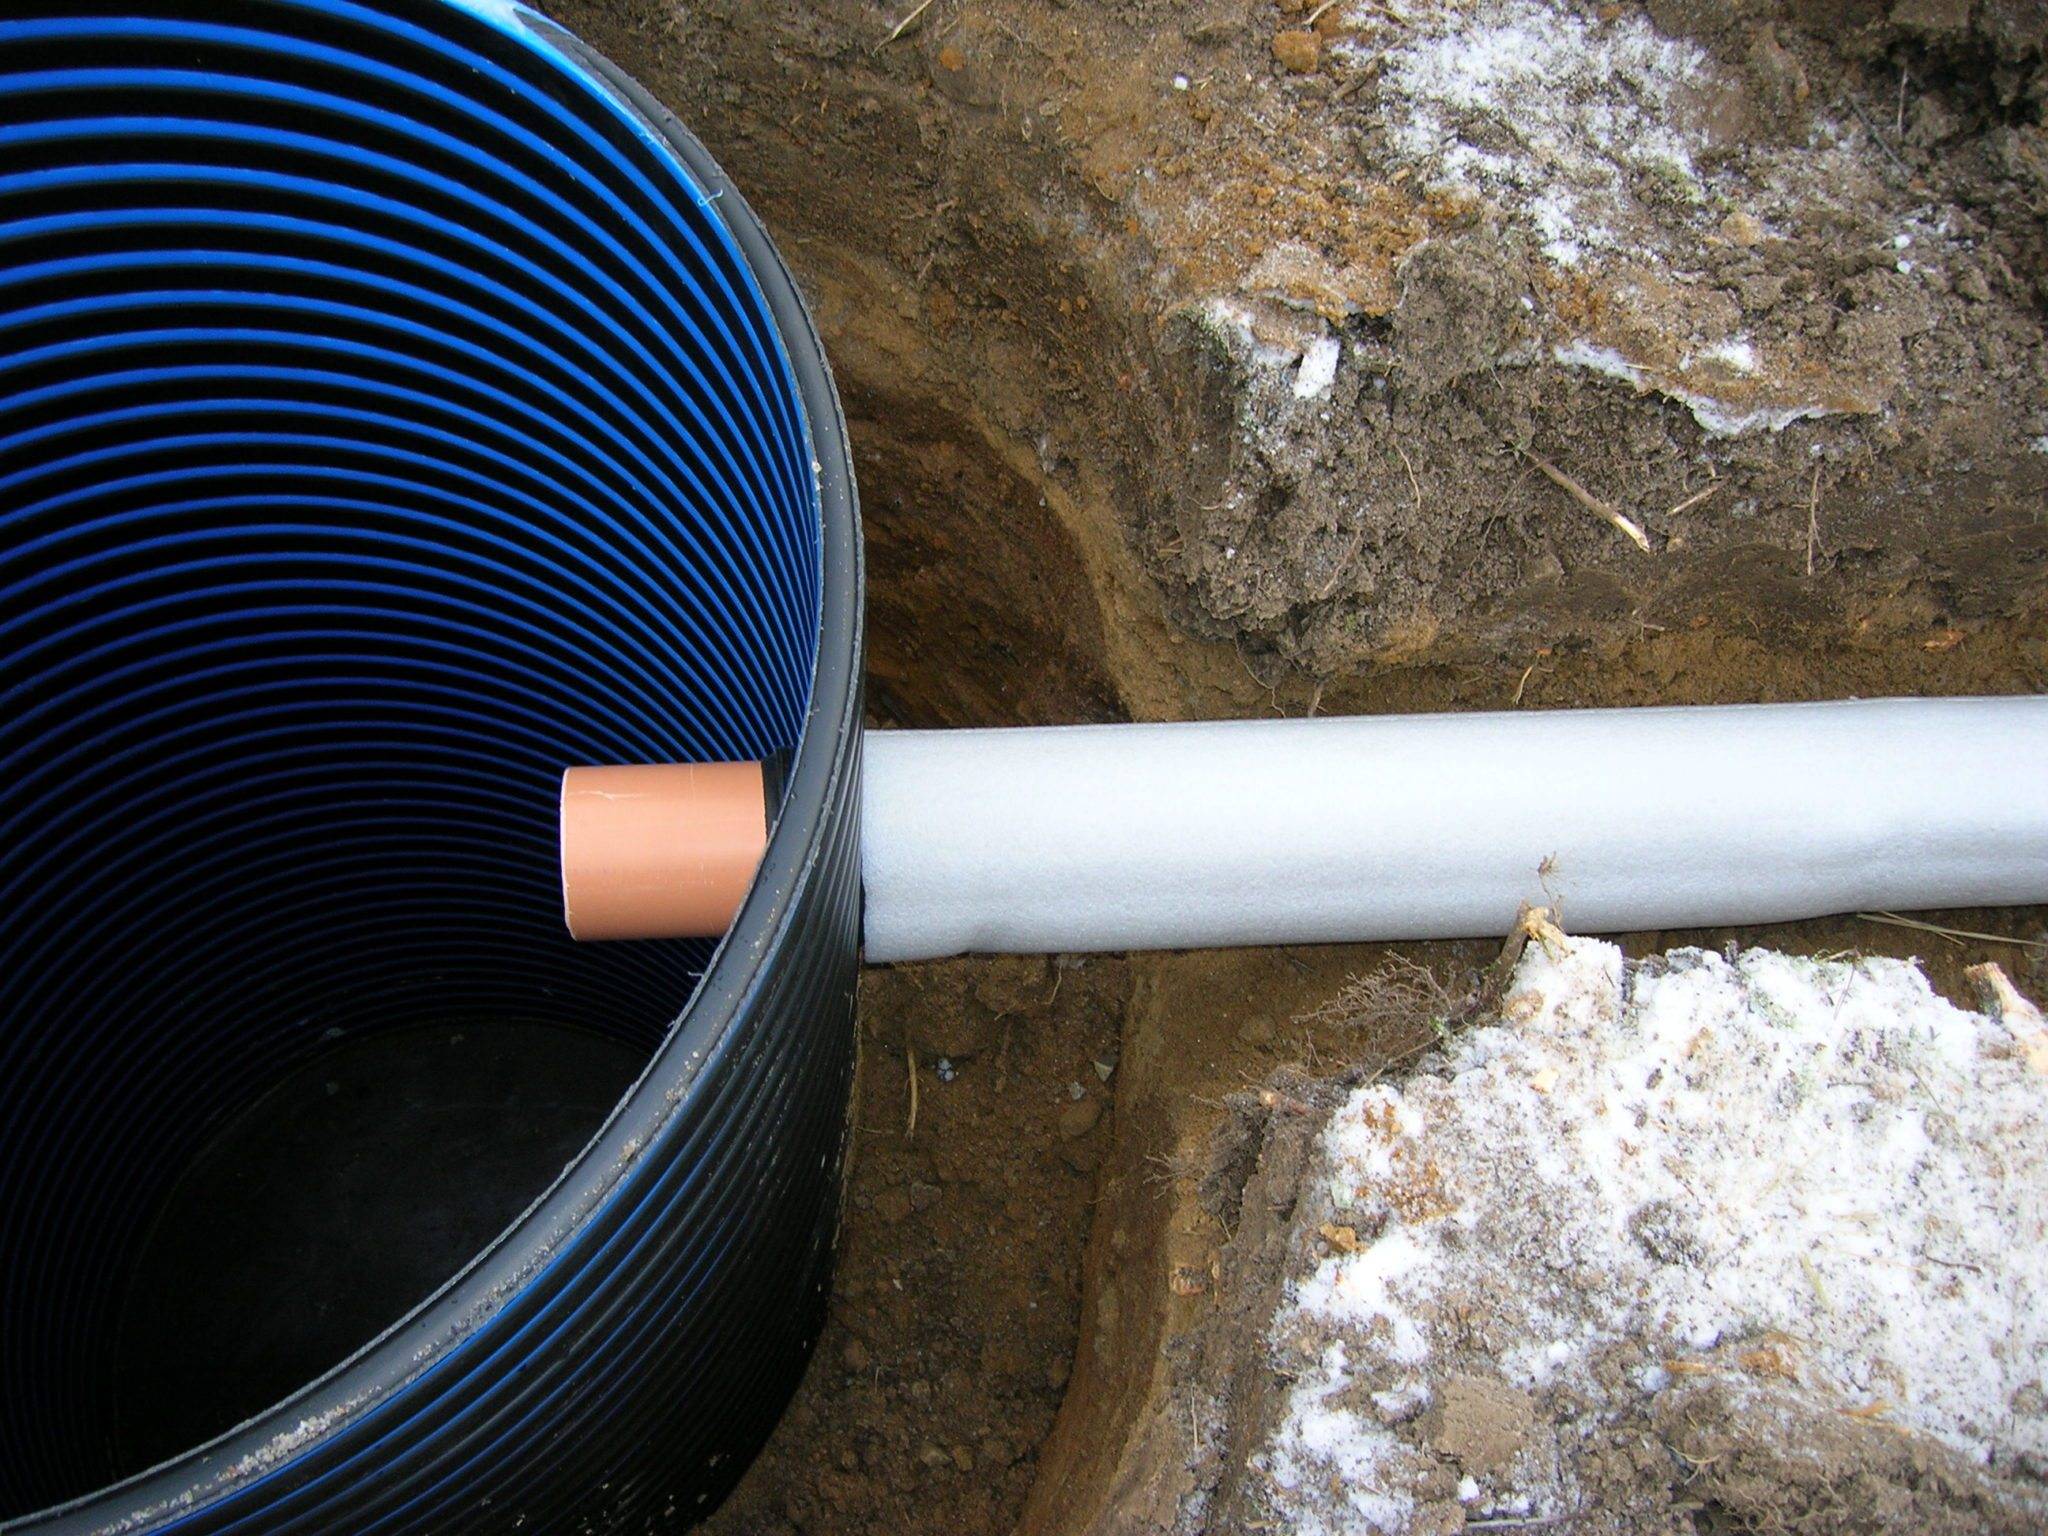 Утепление водопровода в земле: правила теплоизоляции наружных веток